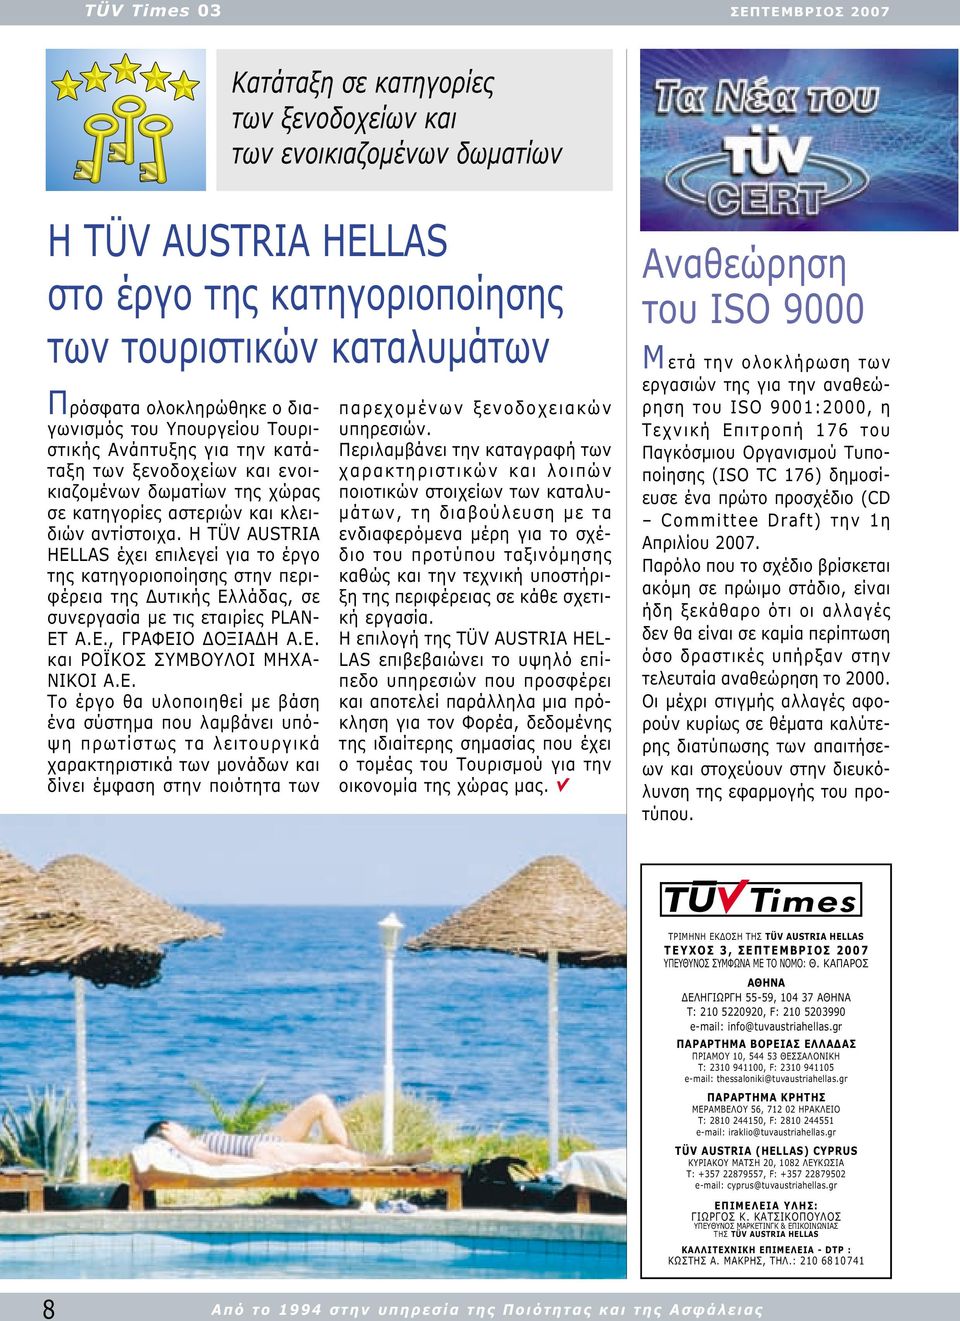 Η TÜV AUSTRIA HELLAS έχει επιλεγεί για το έργο της κατηγοριοποίησης στην περιφέρεια της υτικής Ελλάδας, σε συνεργασία µε τις εταιρίες PLAN- ET A.E., ΓΡΑΦΕΙΟ ΟΞΙΑ Η Α.Ε. και ΡΟΪΚΟΣ ΣΥΜΒΟΥΛΟΙ ΜΗΧΑ- ΝΙΚΟΙ Α.